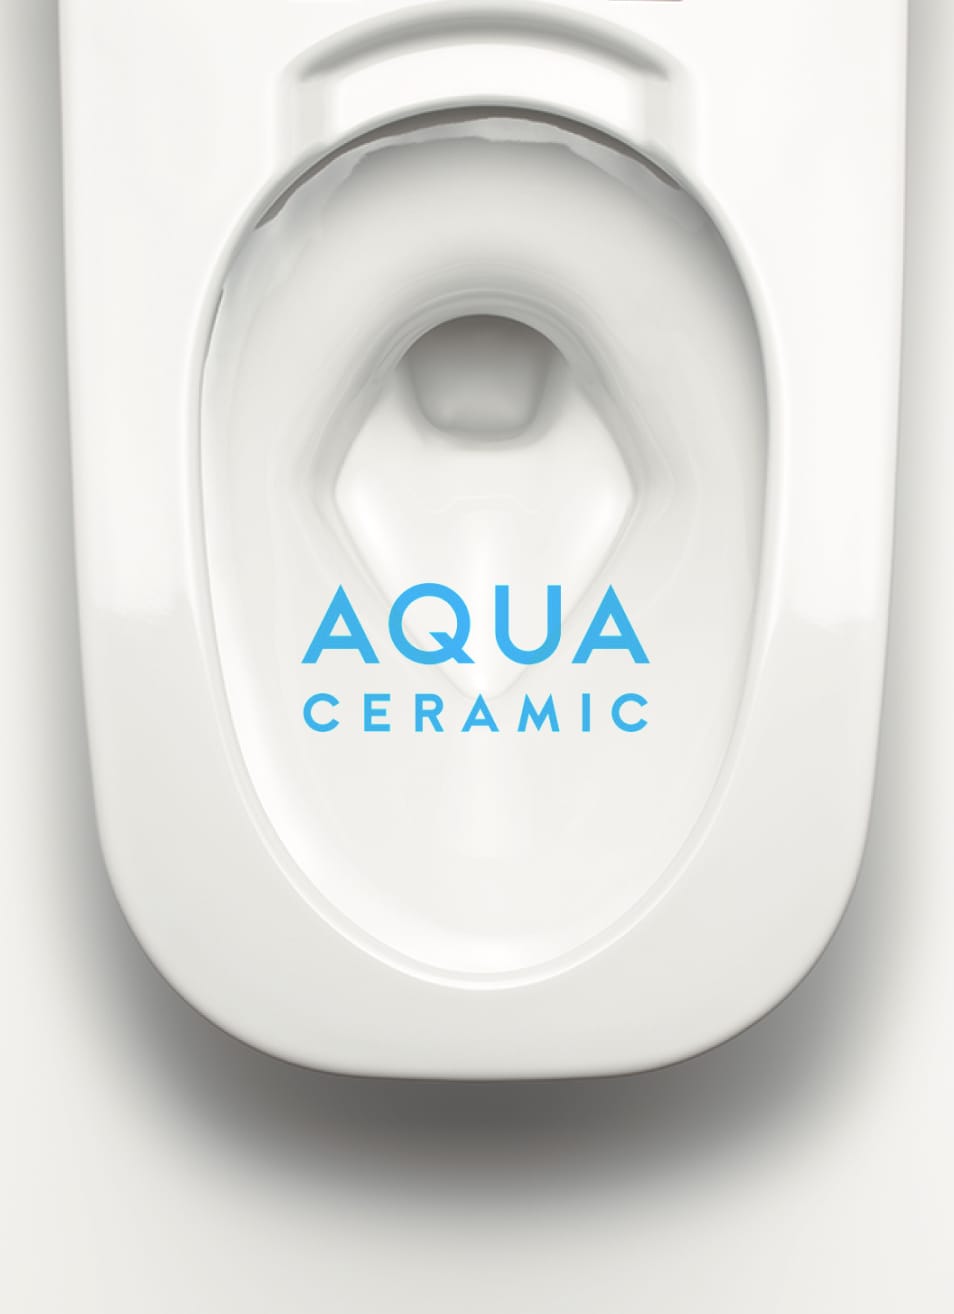 AQUA CERAMIC – Công nghệ sứ vệ sinh tiên tiến nhất. Giành giải thưởng Vàng Good Design Gold Award.